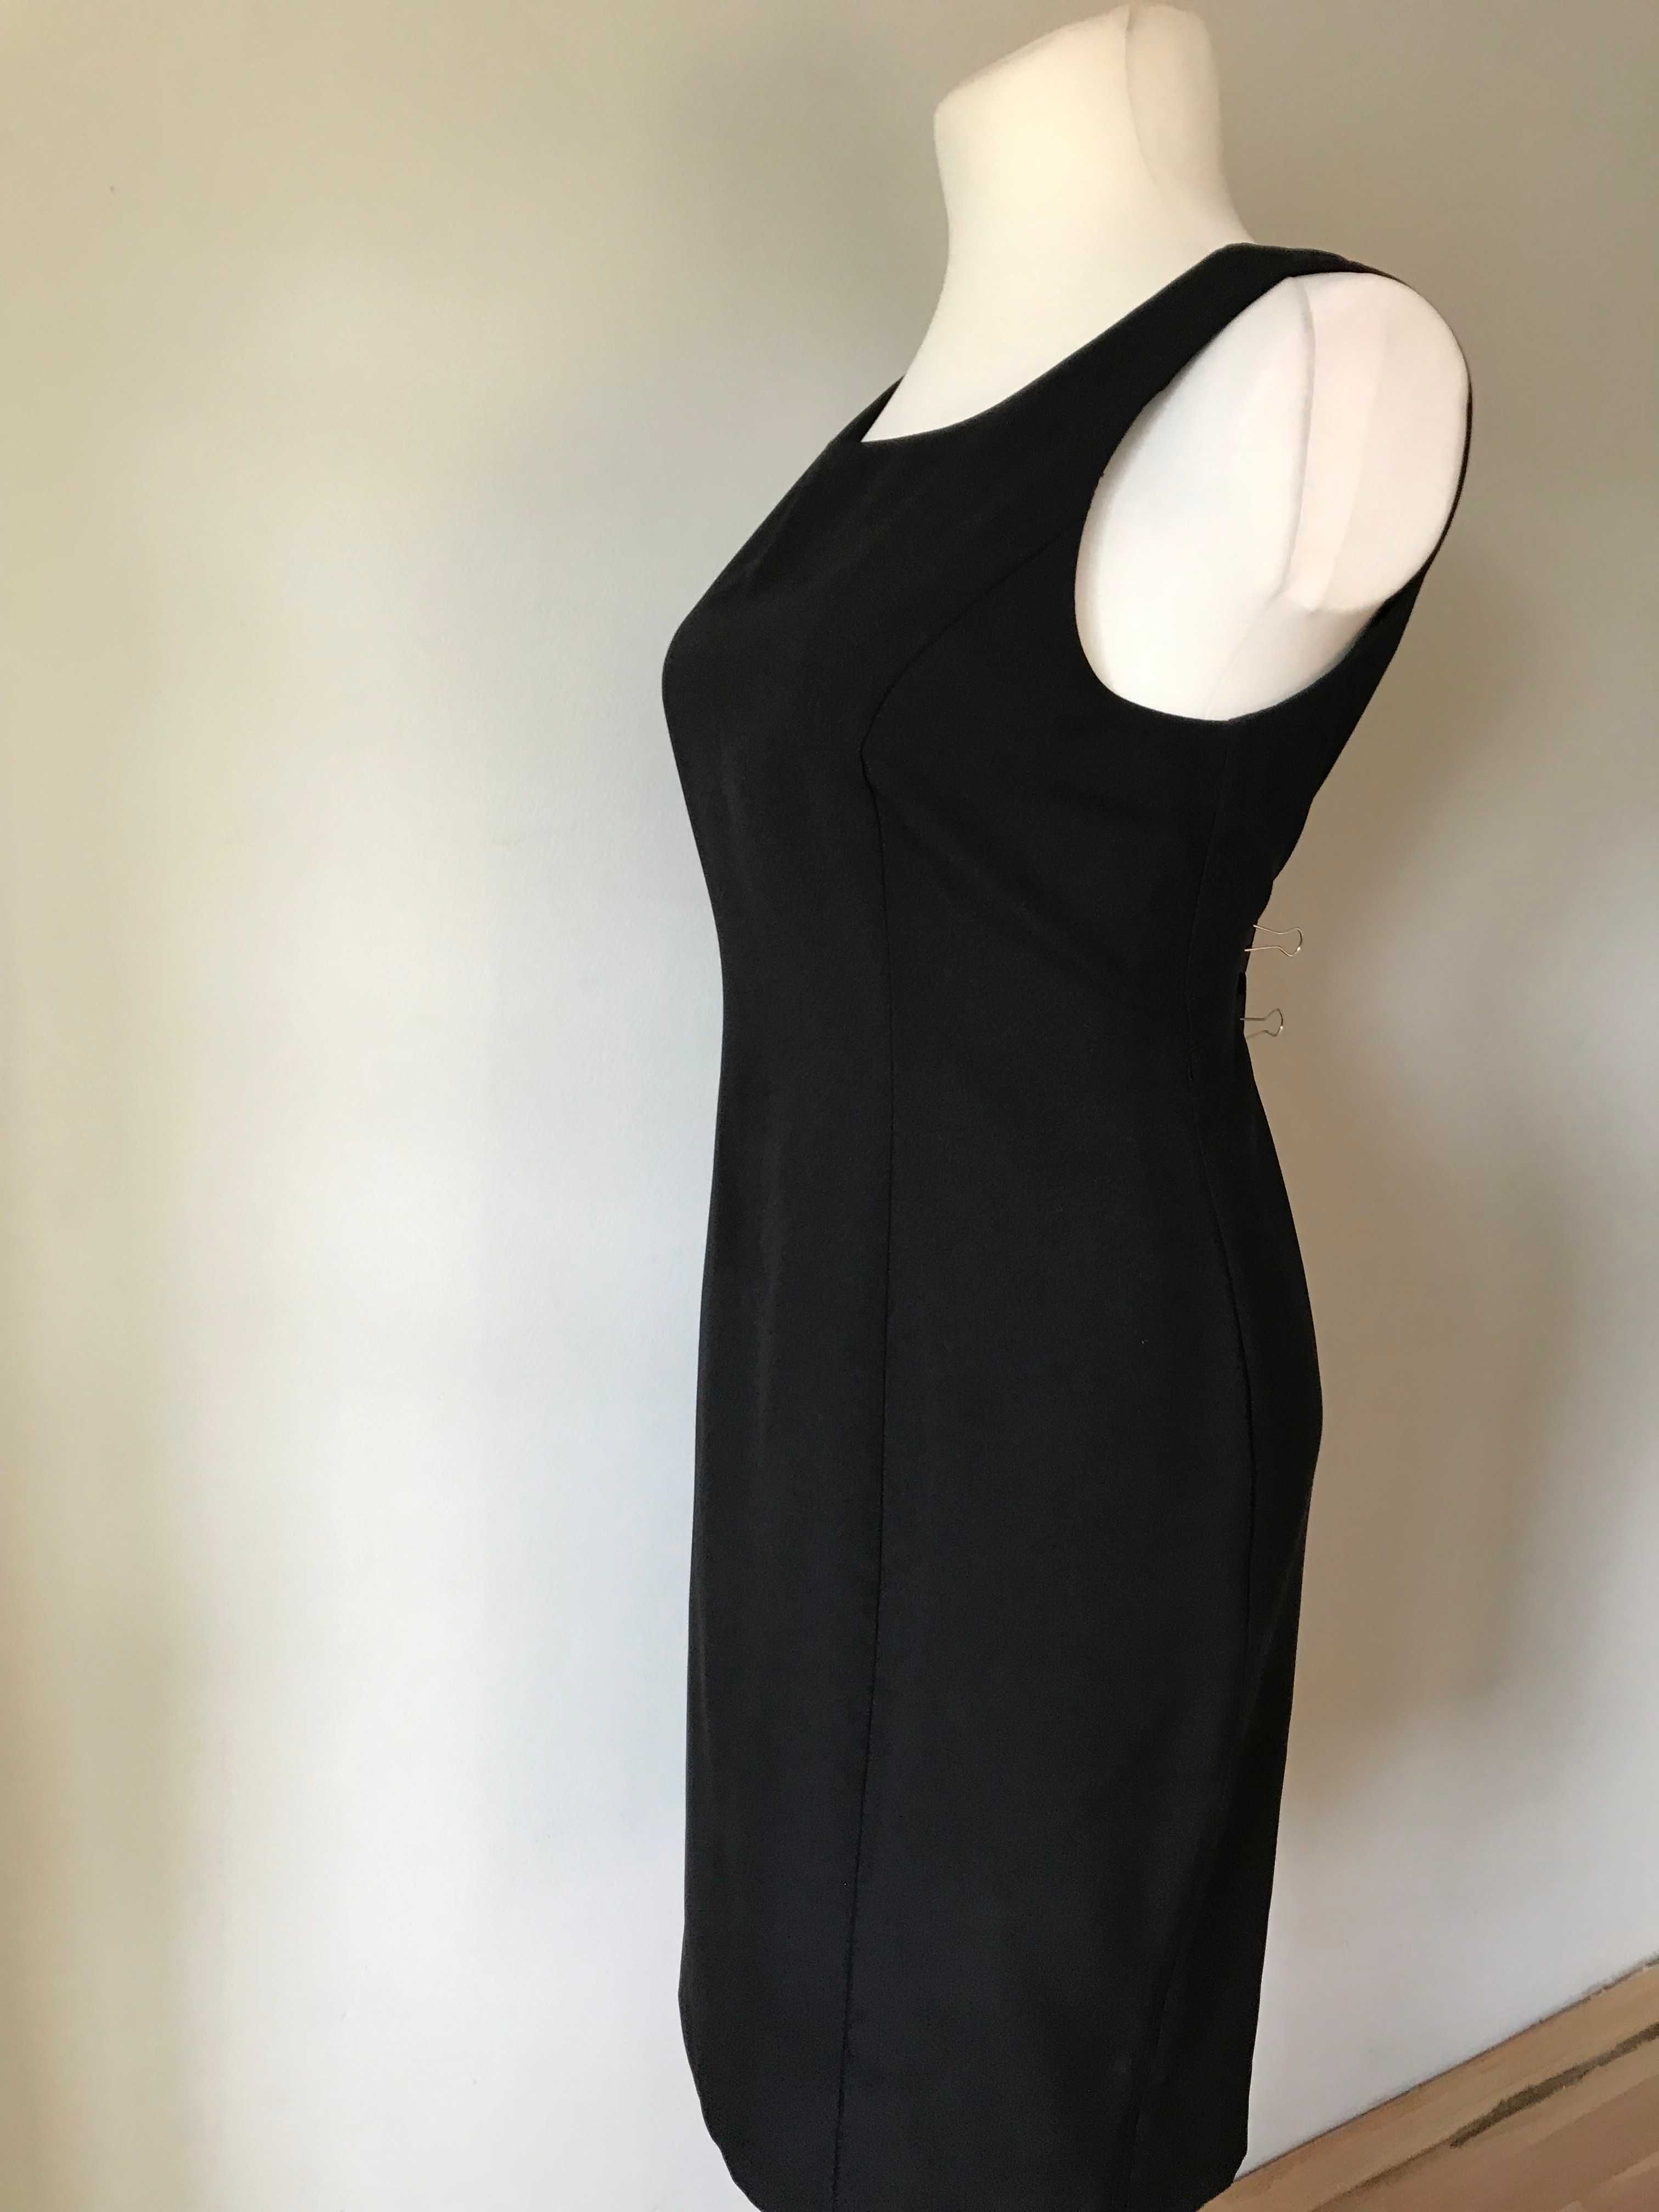 Klasyczna czarna sukienka w stylu retro klepsydra  r. 46 Vintage midi